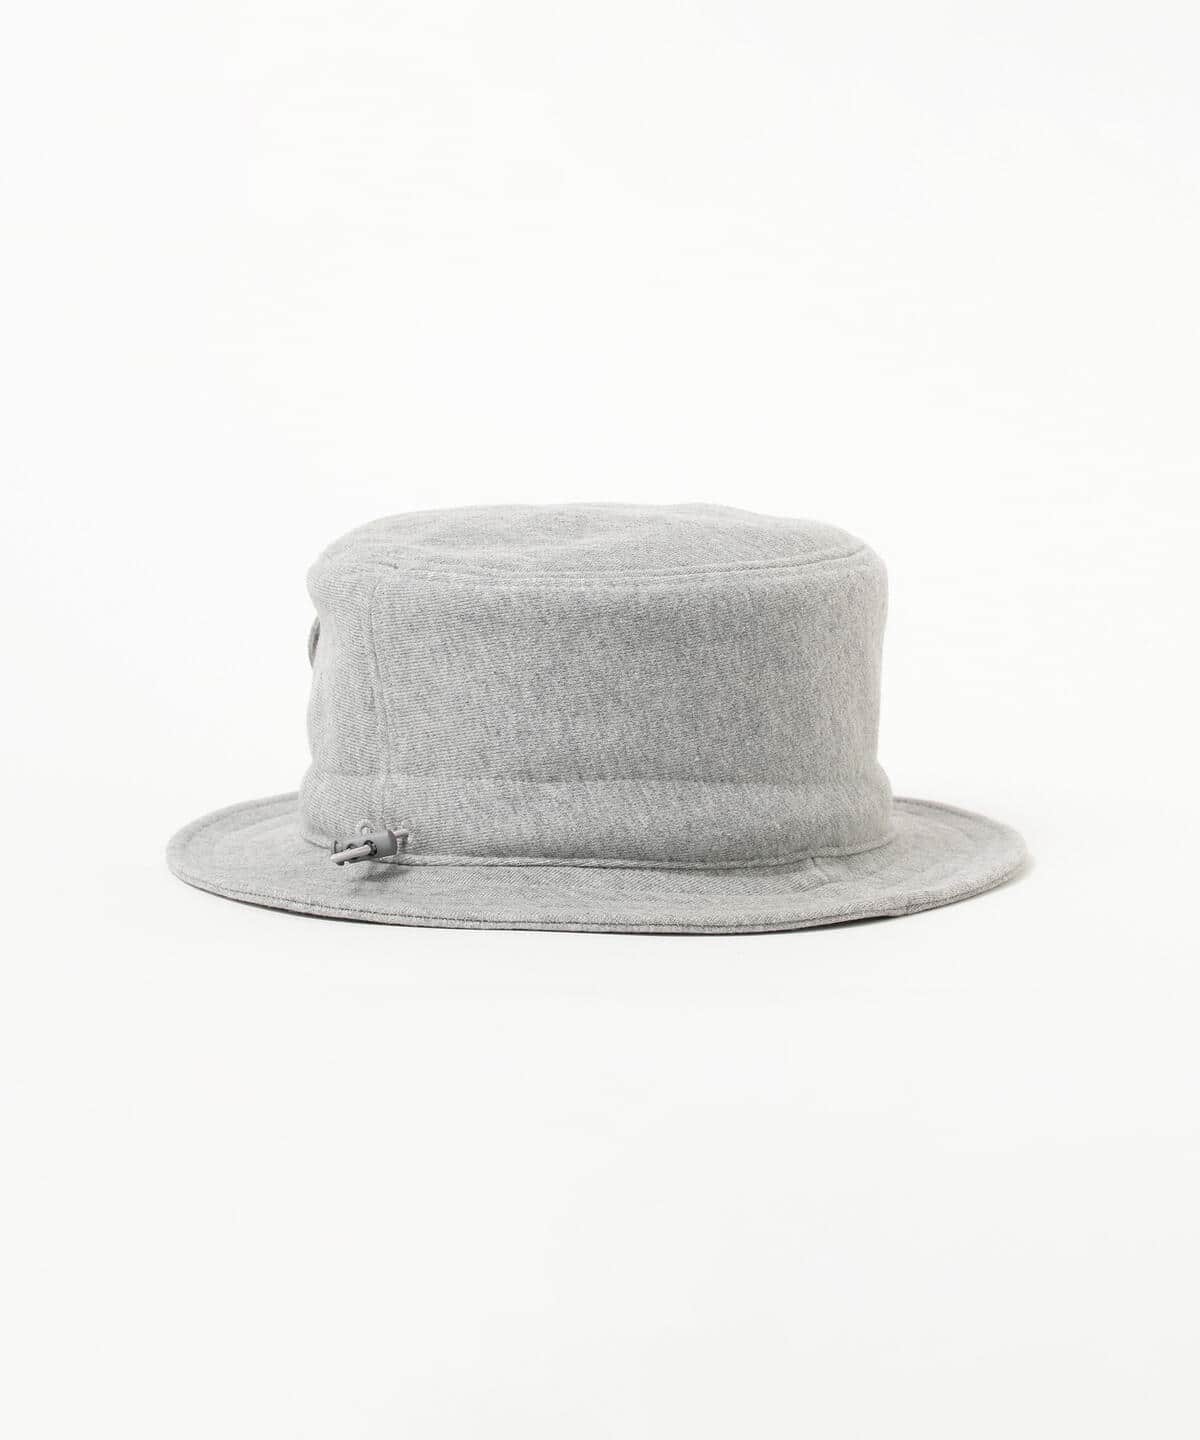 BEAMS（ビームス）FreshService × BEAMS / 別注 FLAP POCKET HAT（帽子